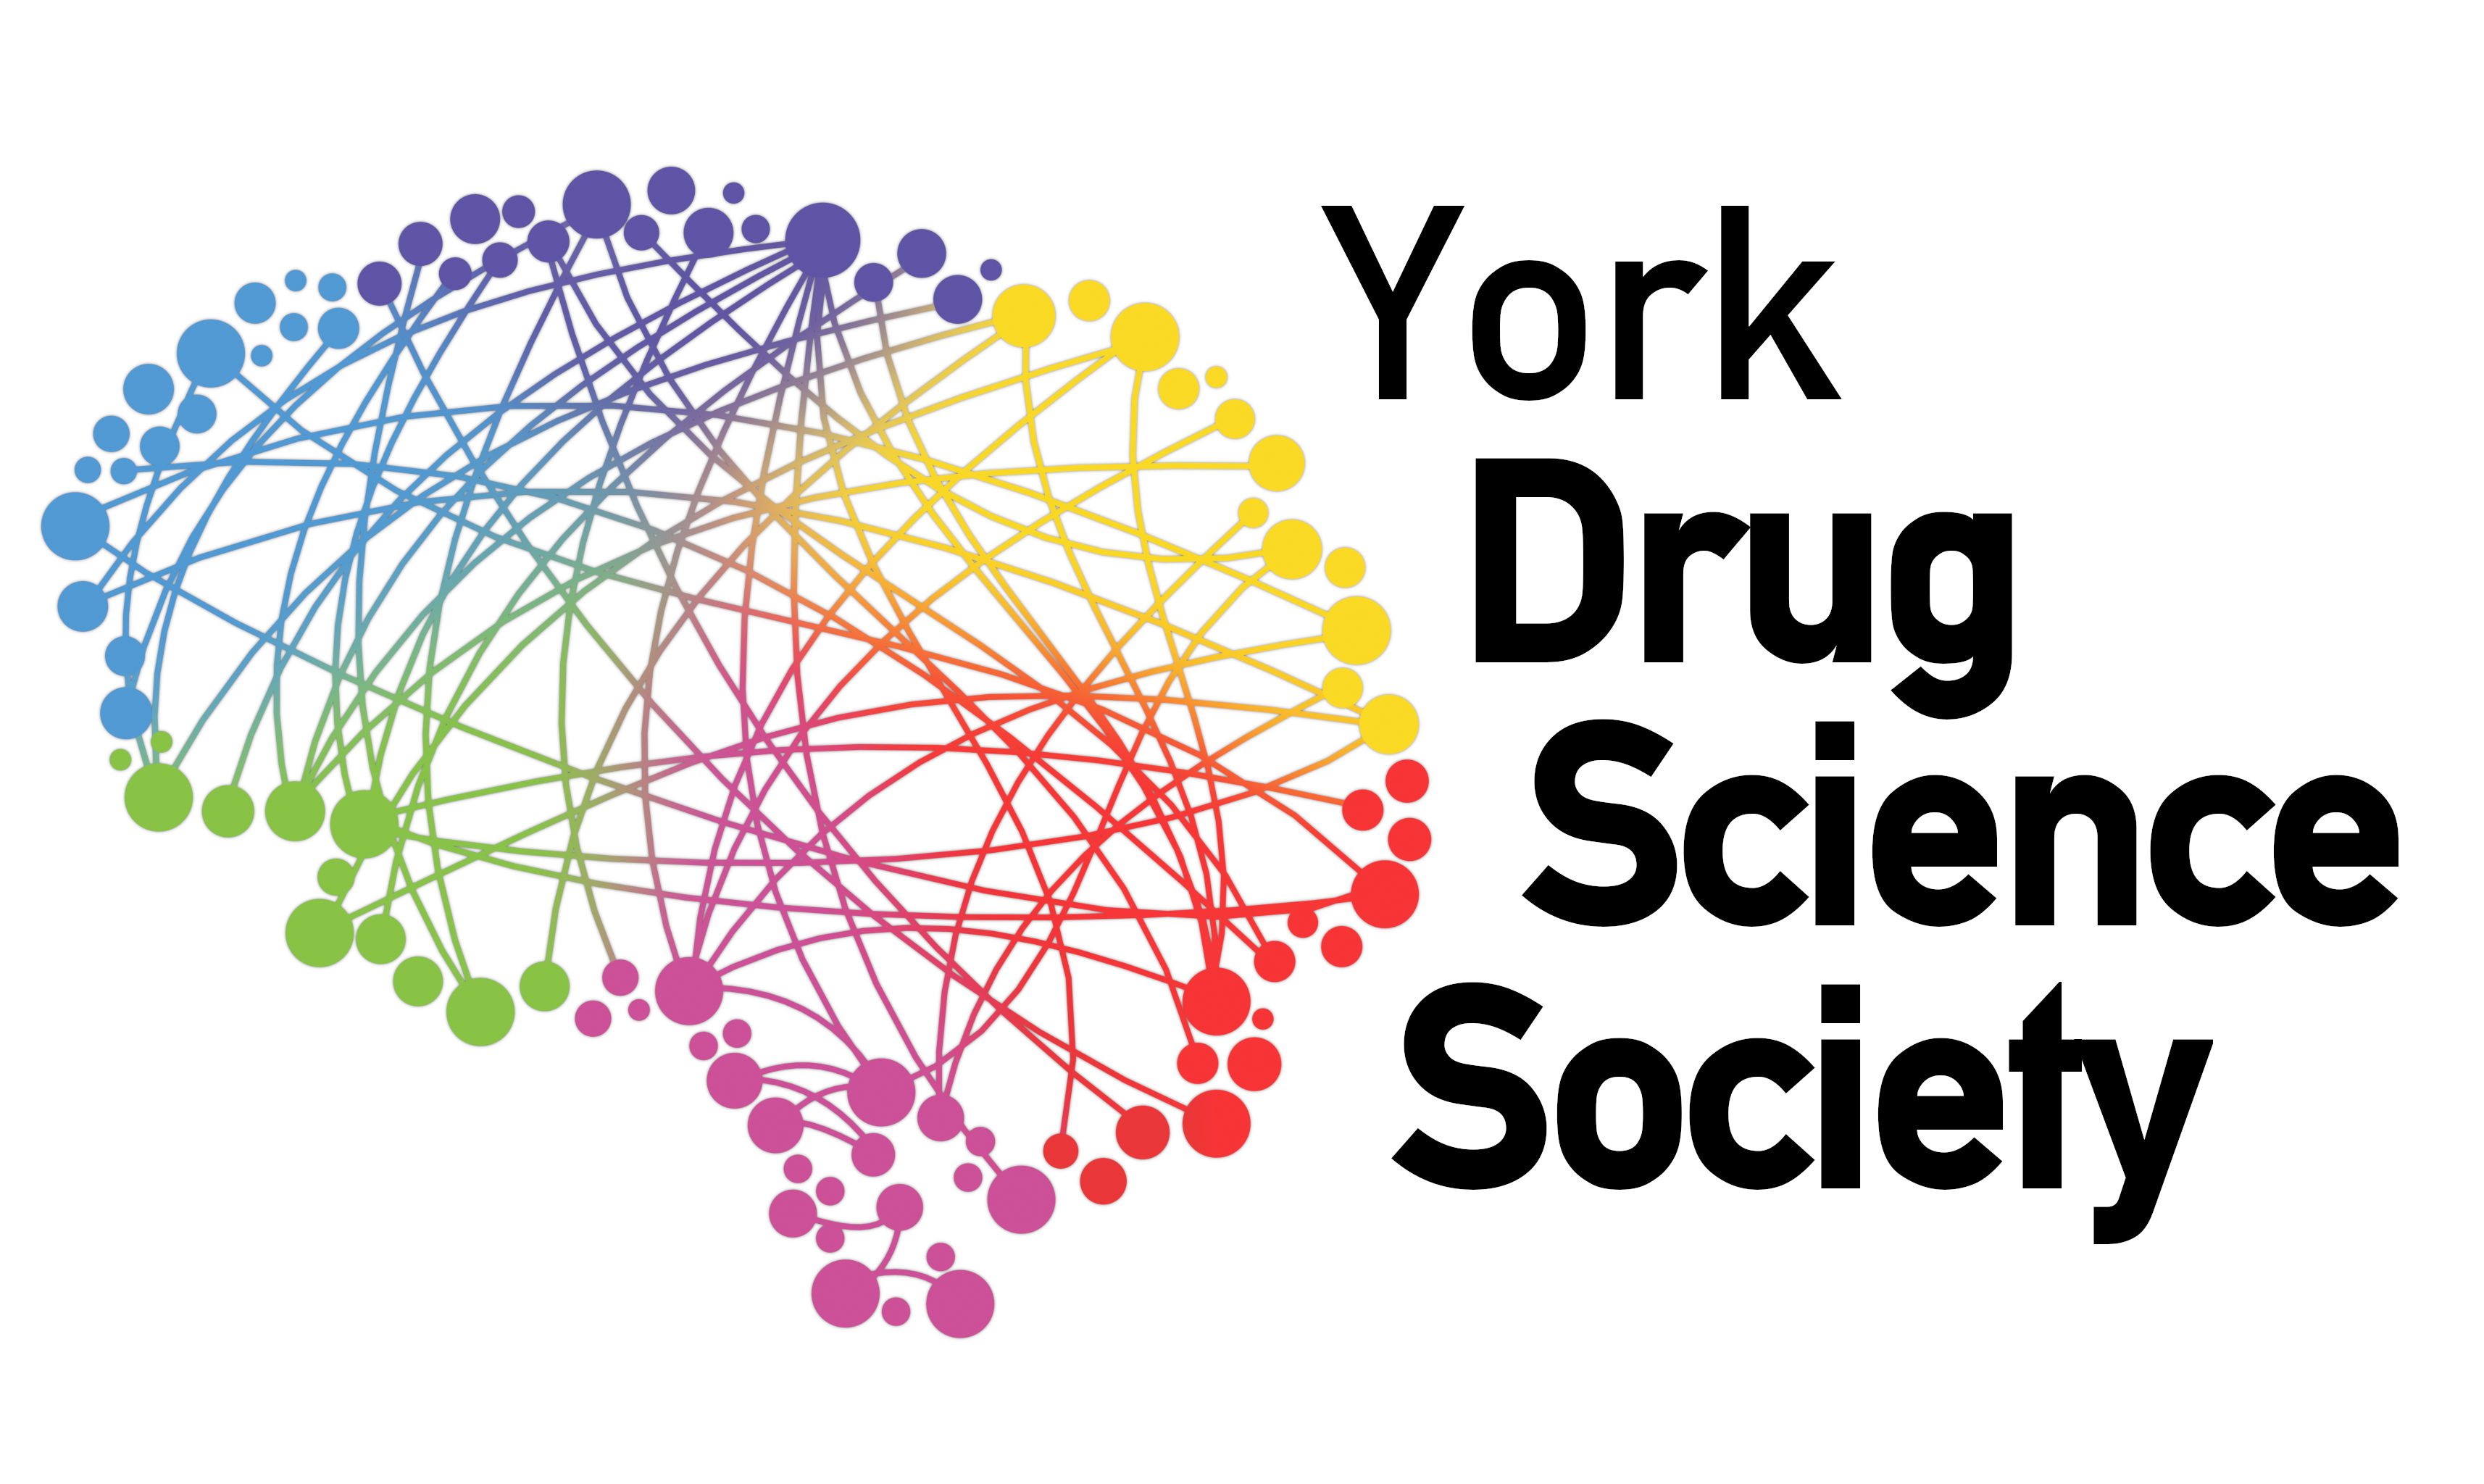 York Drug Science Society